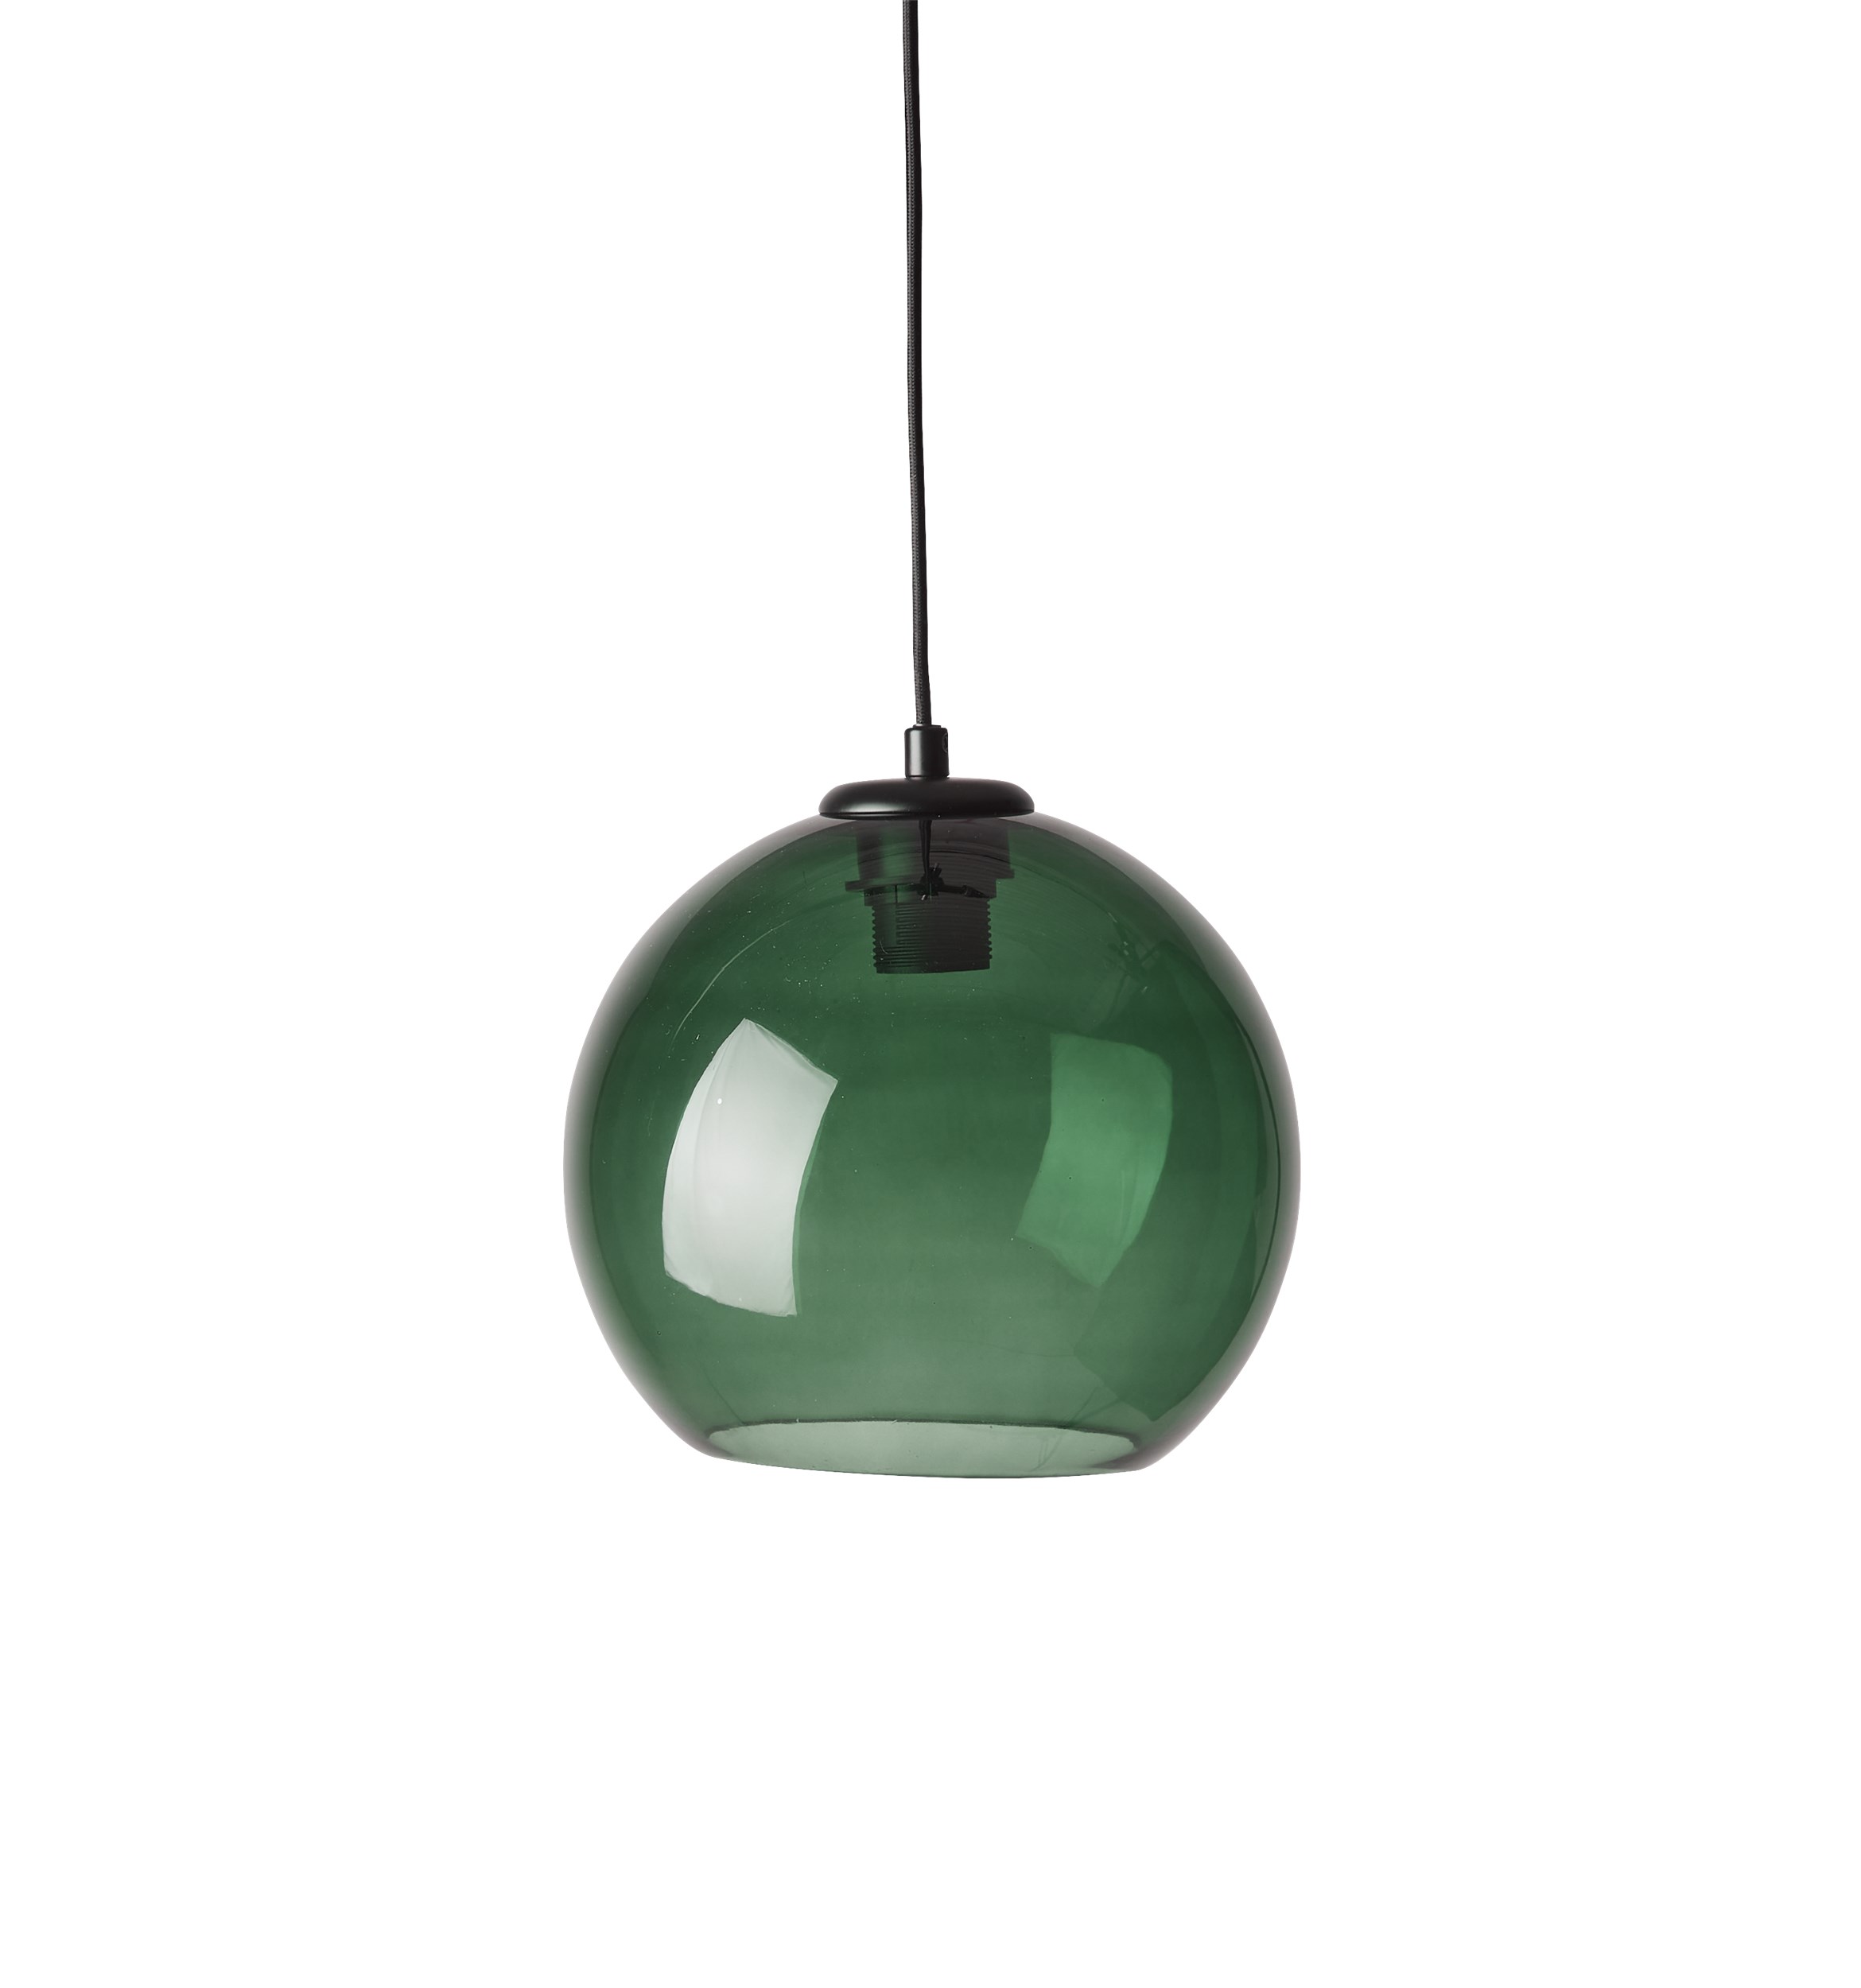 Sona pendellampa (liten) 25 cm - Grön glasskärm, svart ovandel i metall och svart textilsladd